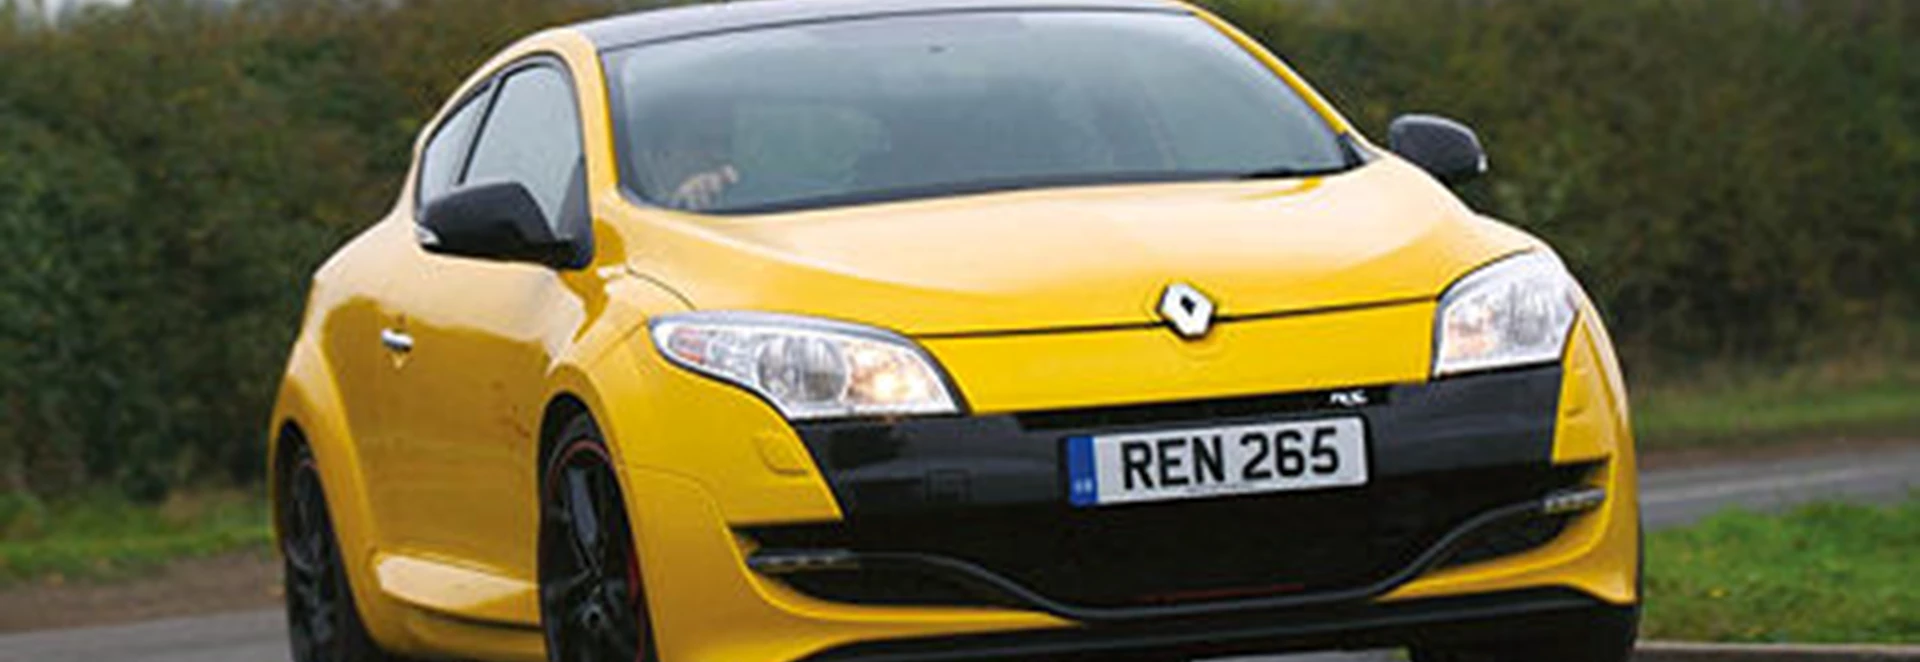 Renault Megane Renaultsport 265 Trophy 